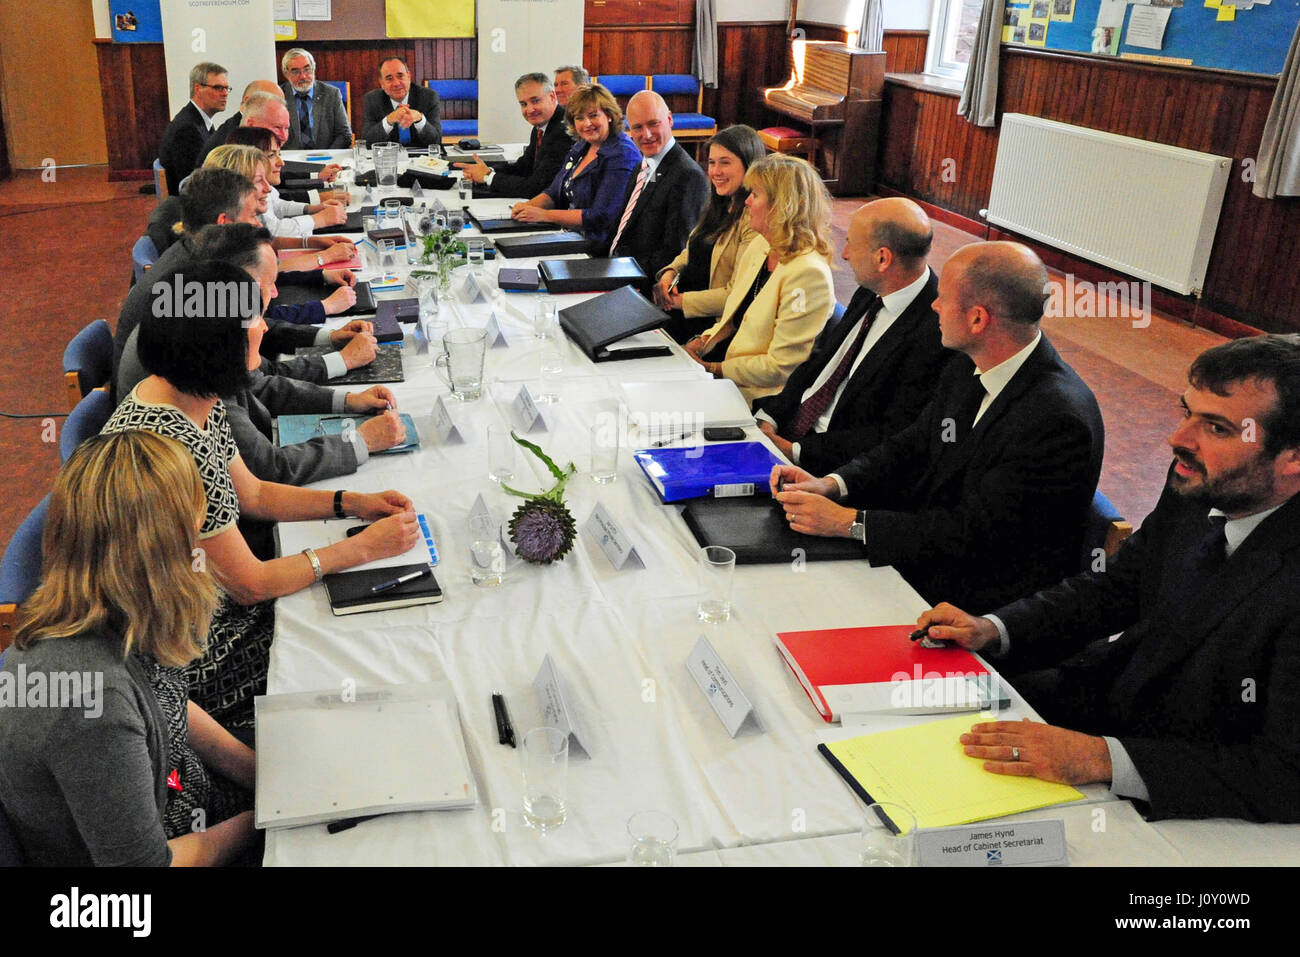 Schottlands erster Minister Alex Salmond (am Kopf des Tisches, R) beherbergt einen vollen Schrank treffen im Kirchensaal in Arbroath, Teil einer Serie gehalten um das Land vor öffentlichen Sitzungen, bei den Wählern zu engagieren Stockfoto